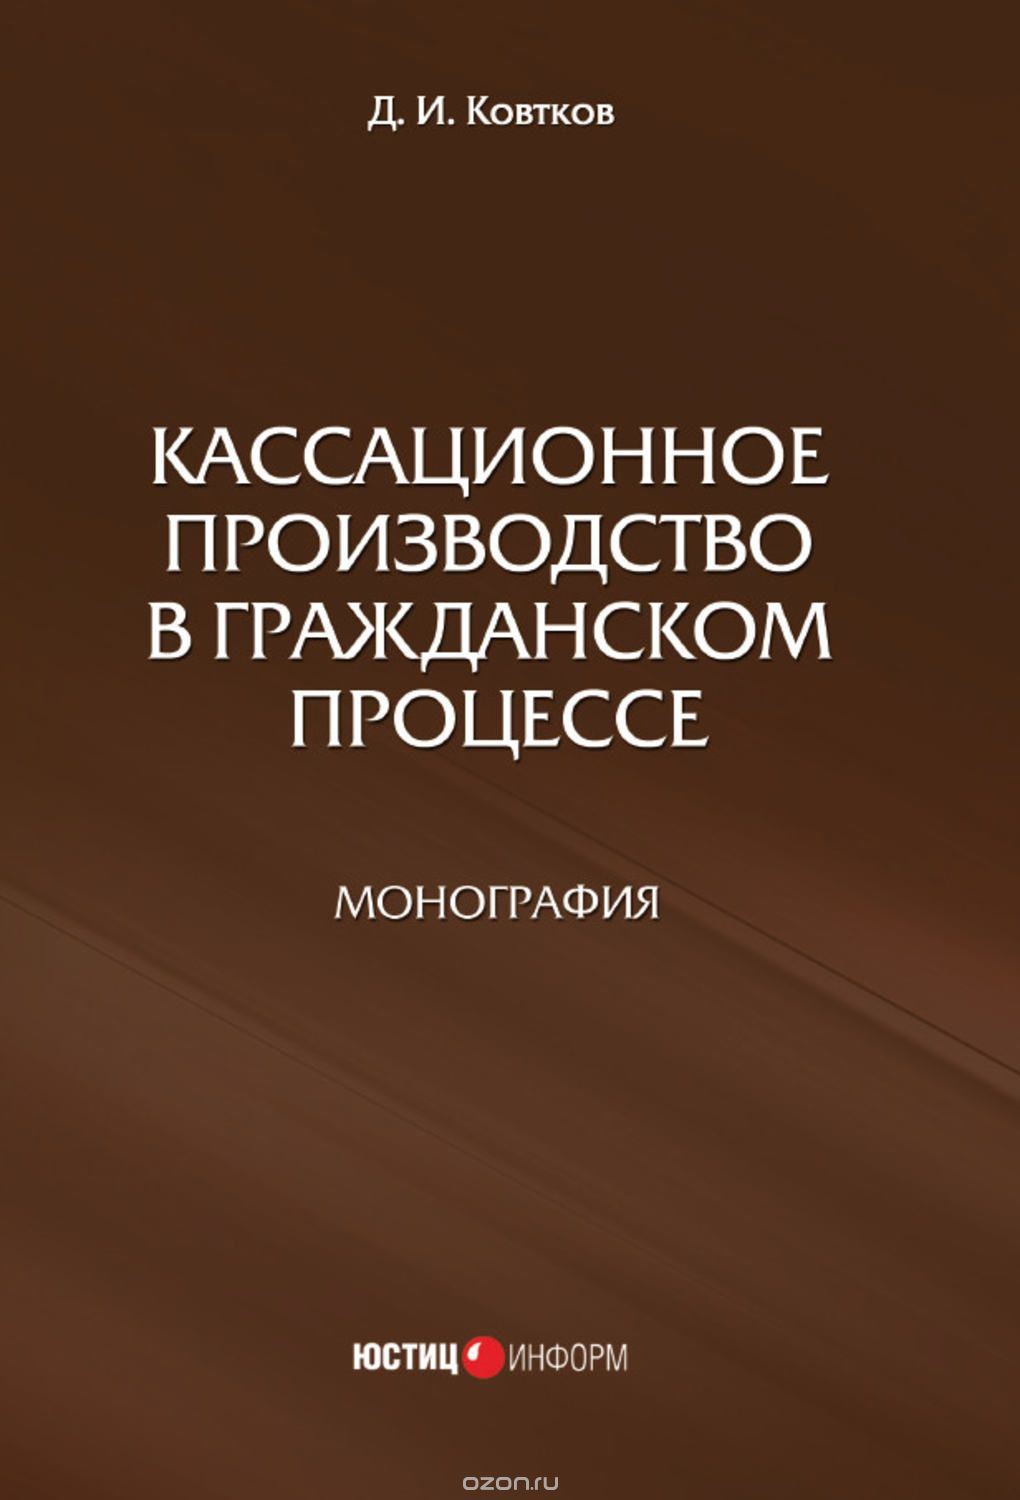 Кассационное производство в гражданском процессе, Д. И. Ковтков